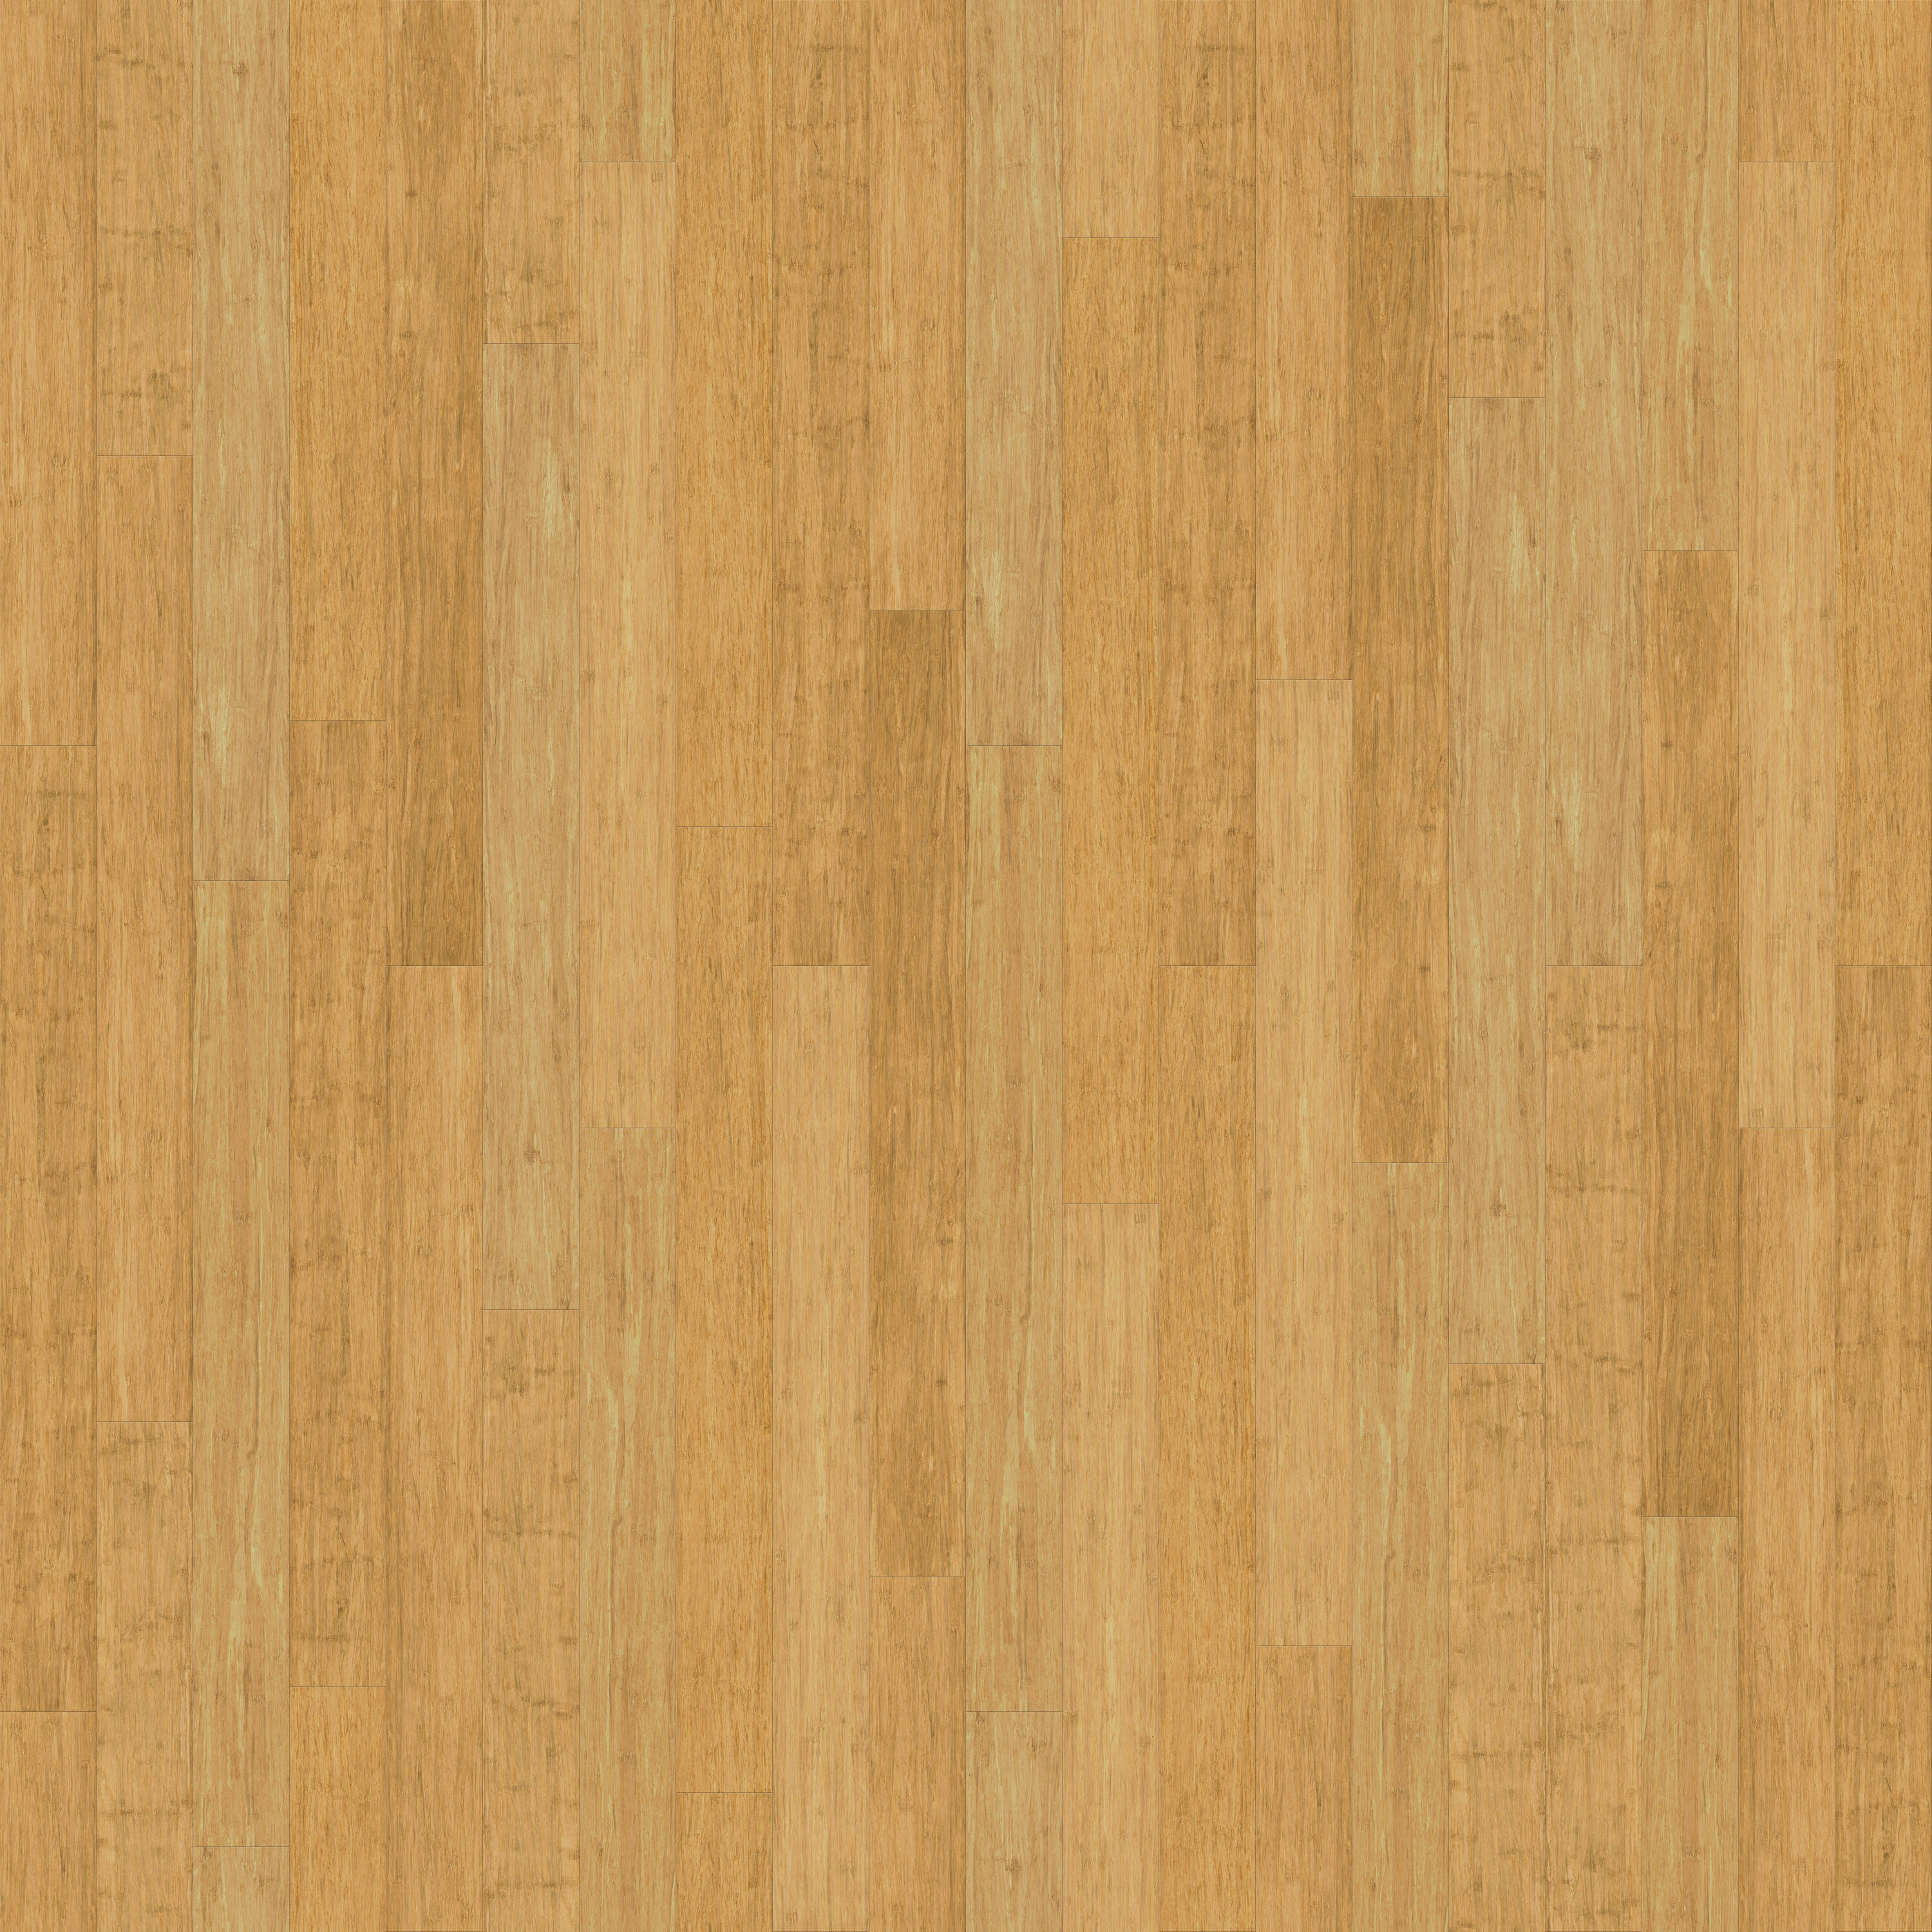 Wood Veneer Strips - materials - by owner - sale - craigslist